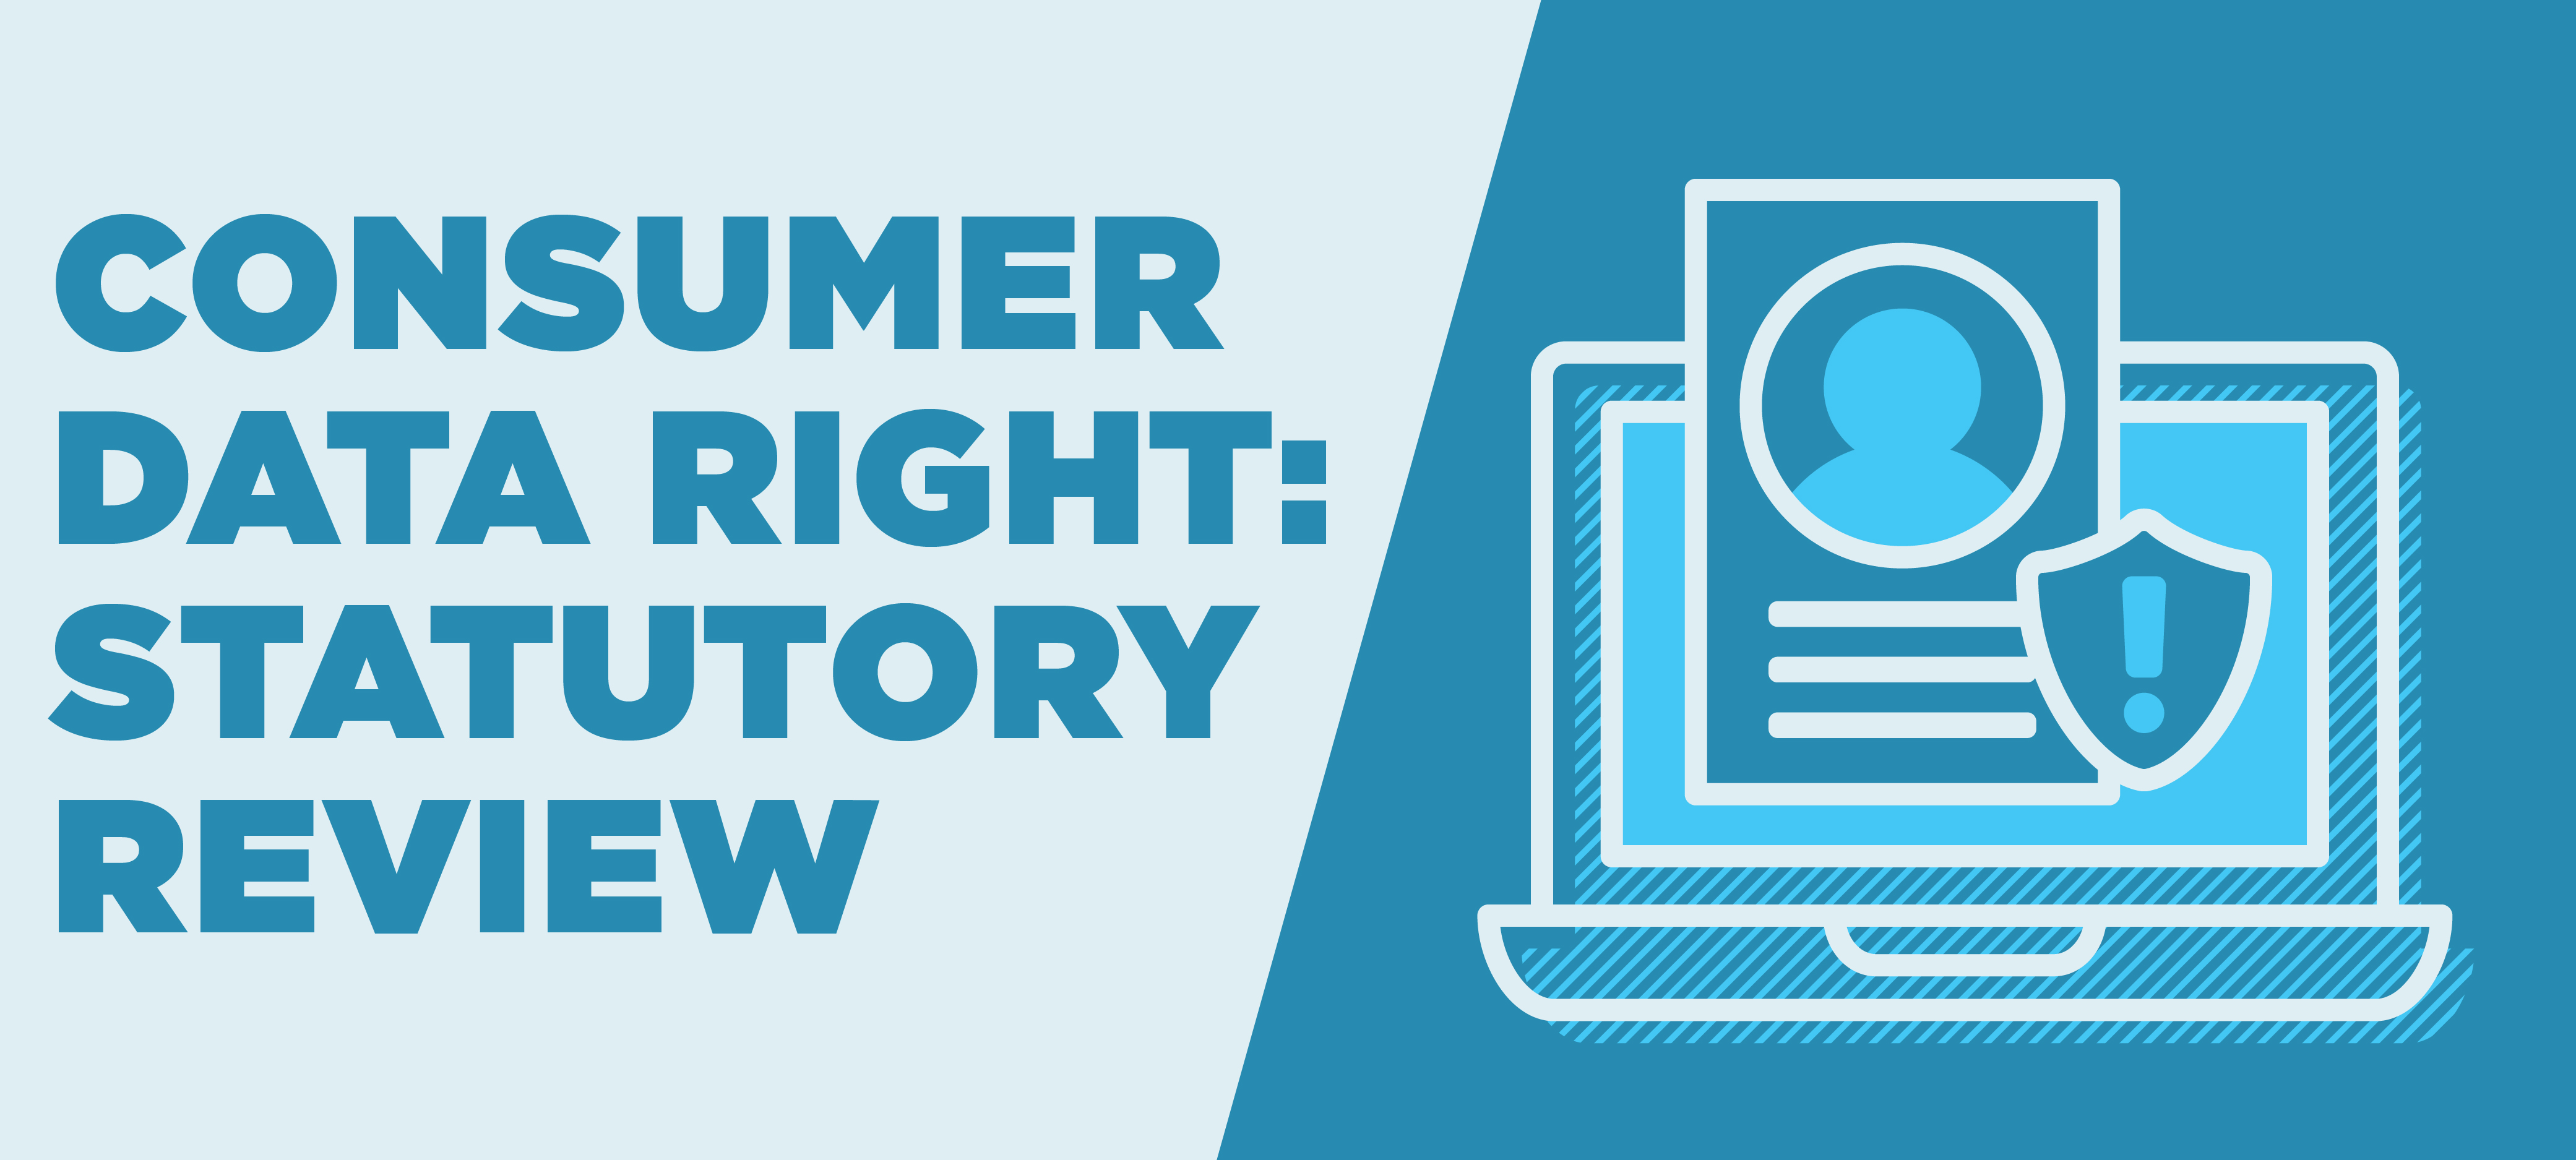 Consumer Data Right: Statutory Review